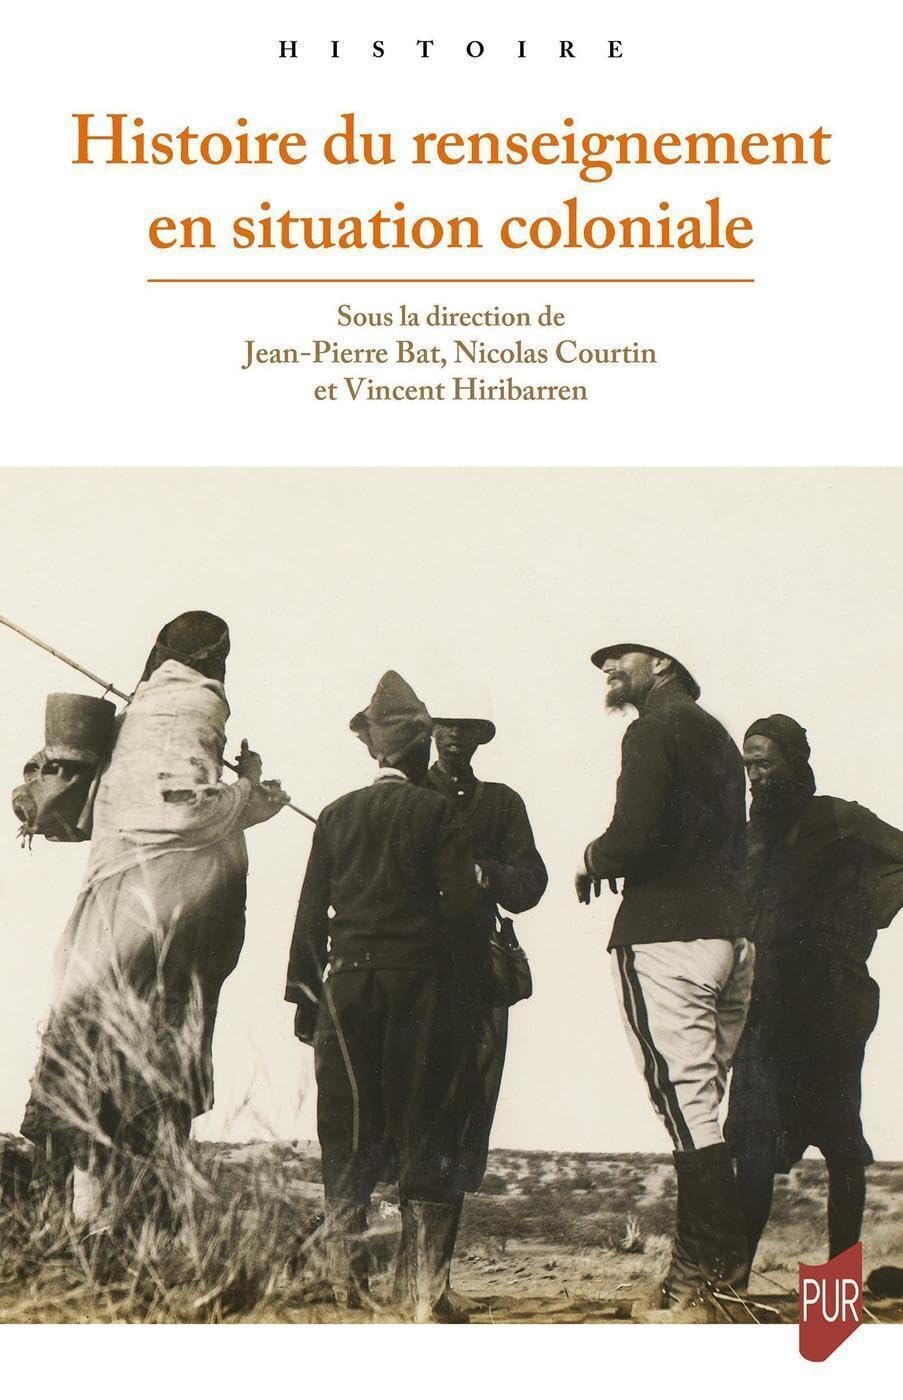 couverture du livre de Bat, Courtin et Hiribarren: Histoire du renseignement colonial